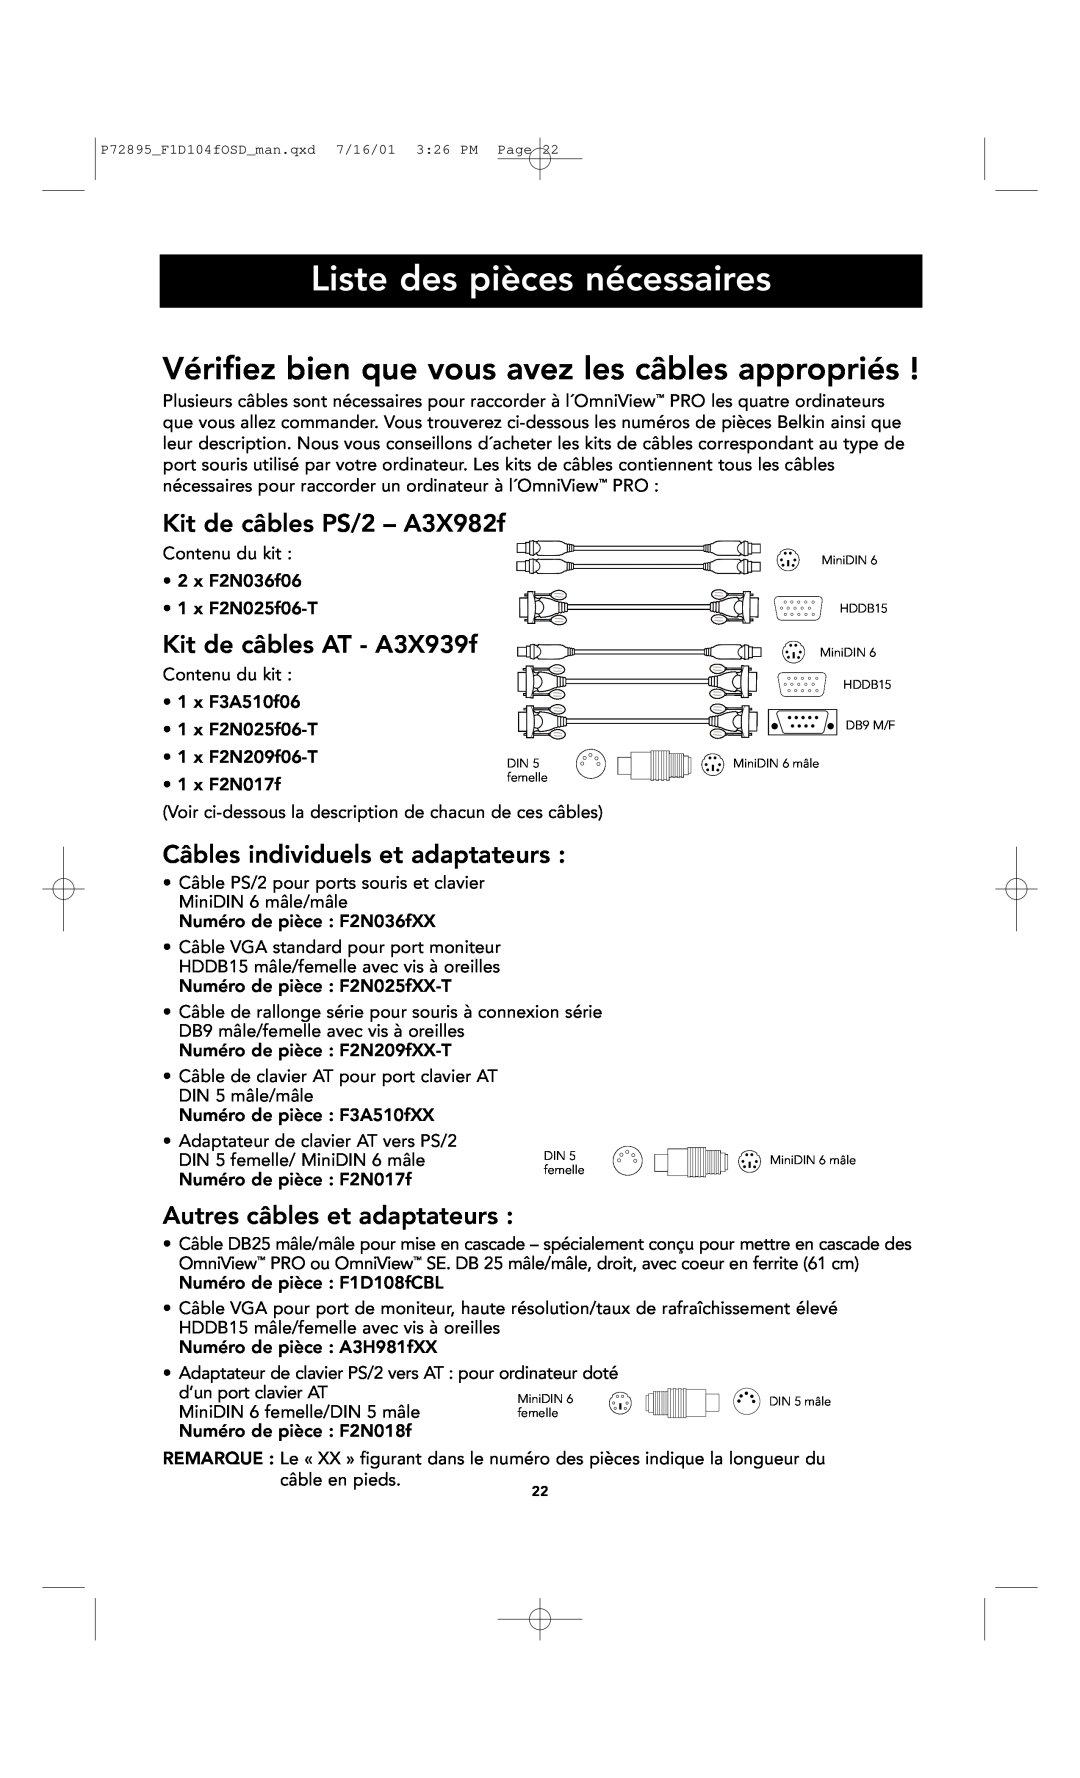 Belkin F1D104-OSD user manual Liste des pièces nécessaires, Kit de câbles PS/2 - A3X982f, Kit de câbles AT - A3X939f 